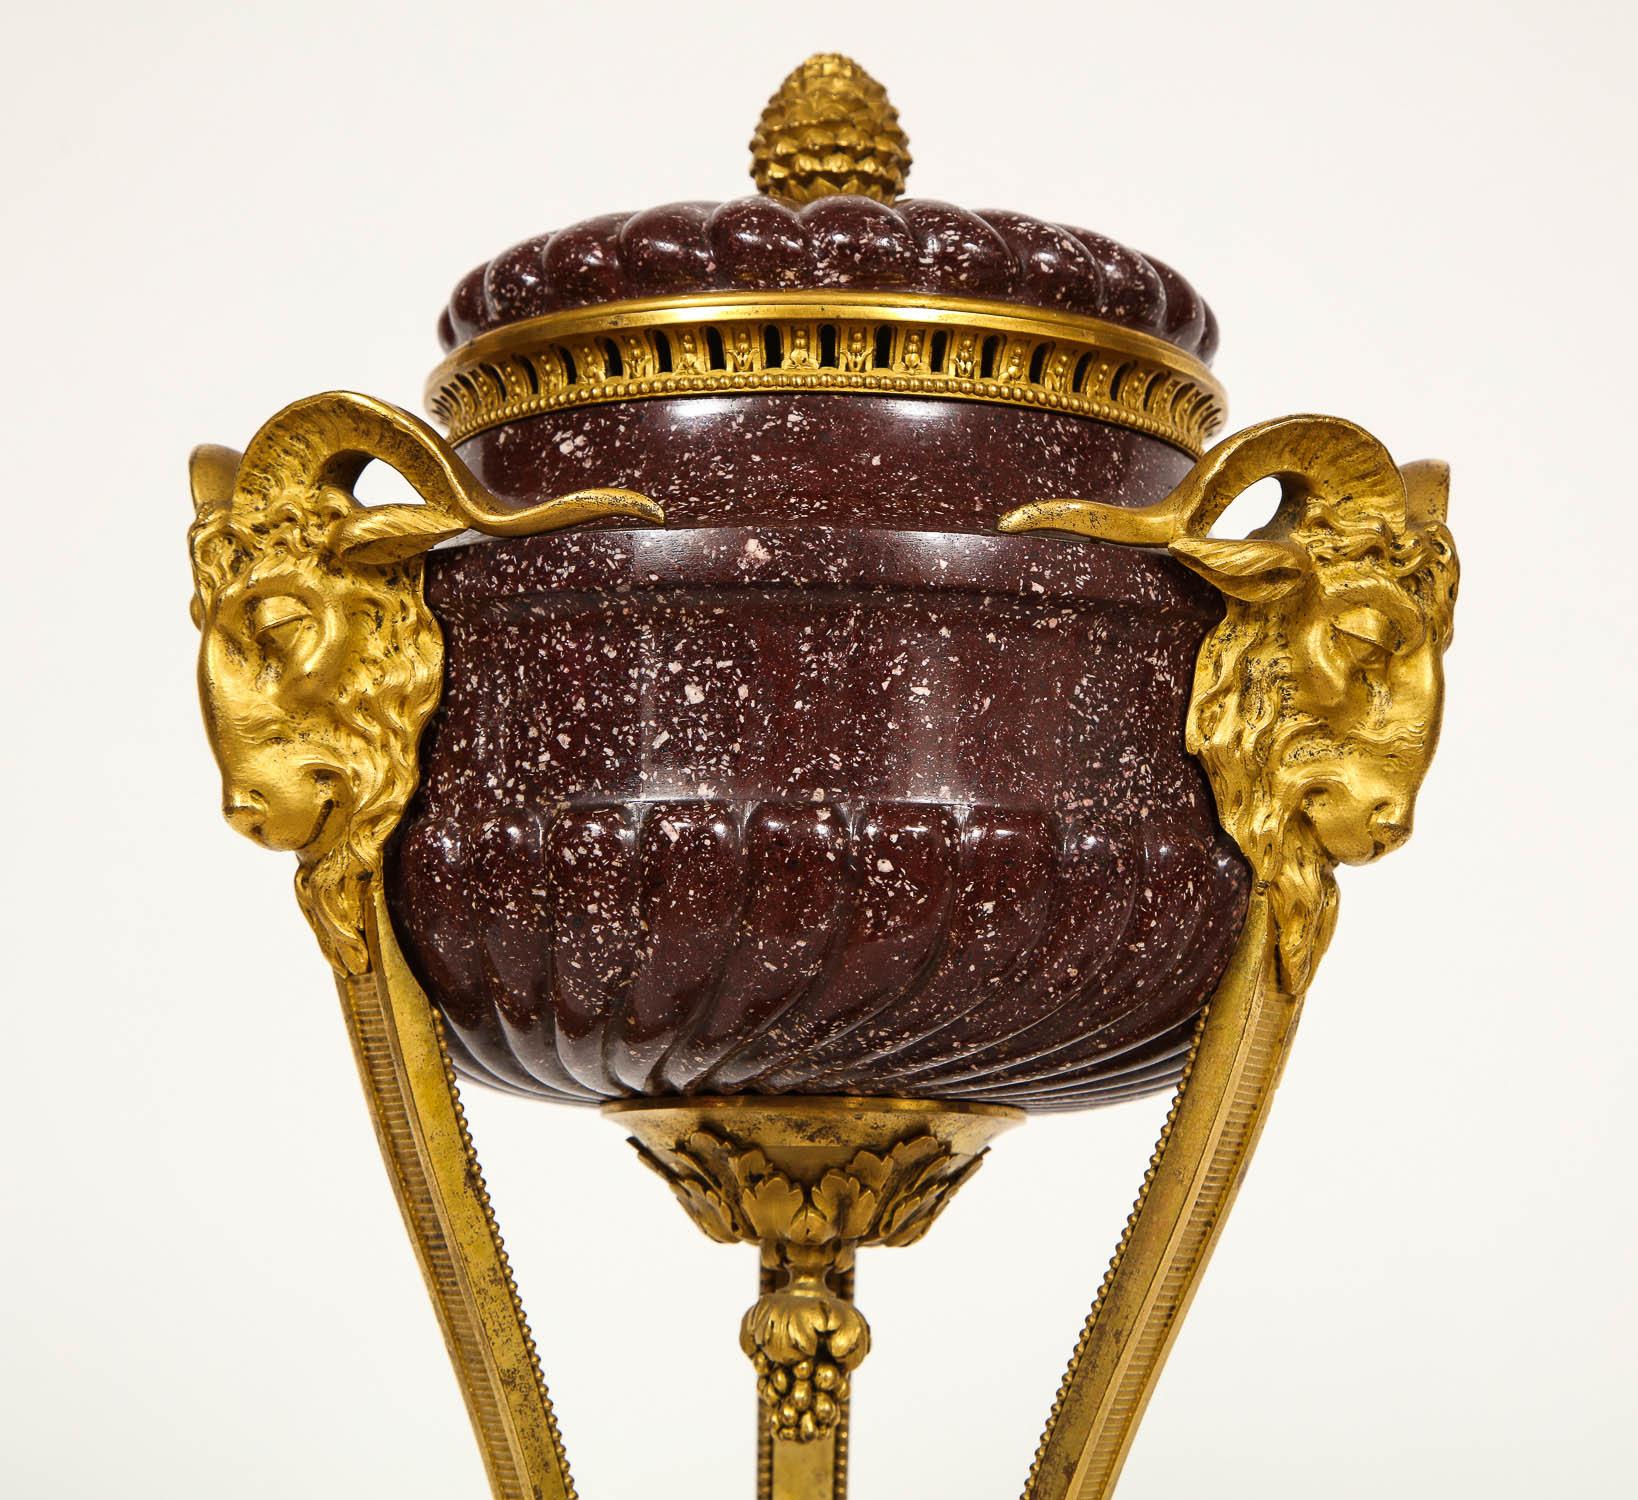 Magnifique paire de parfums en porcelaine égyptienne et bronze doré d'après Gouthière, de style Louis XVI/néoclassique français vers 1870, d'après le modèle de Pierre Gouthière, attribué à Alfred Beurdeley. Chacun avec une base triangulaire et un